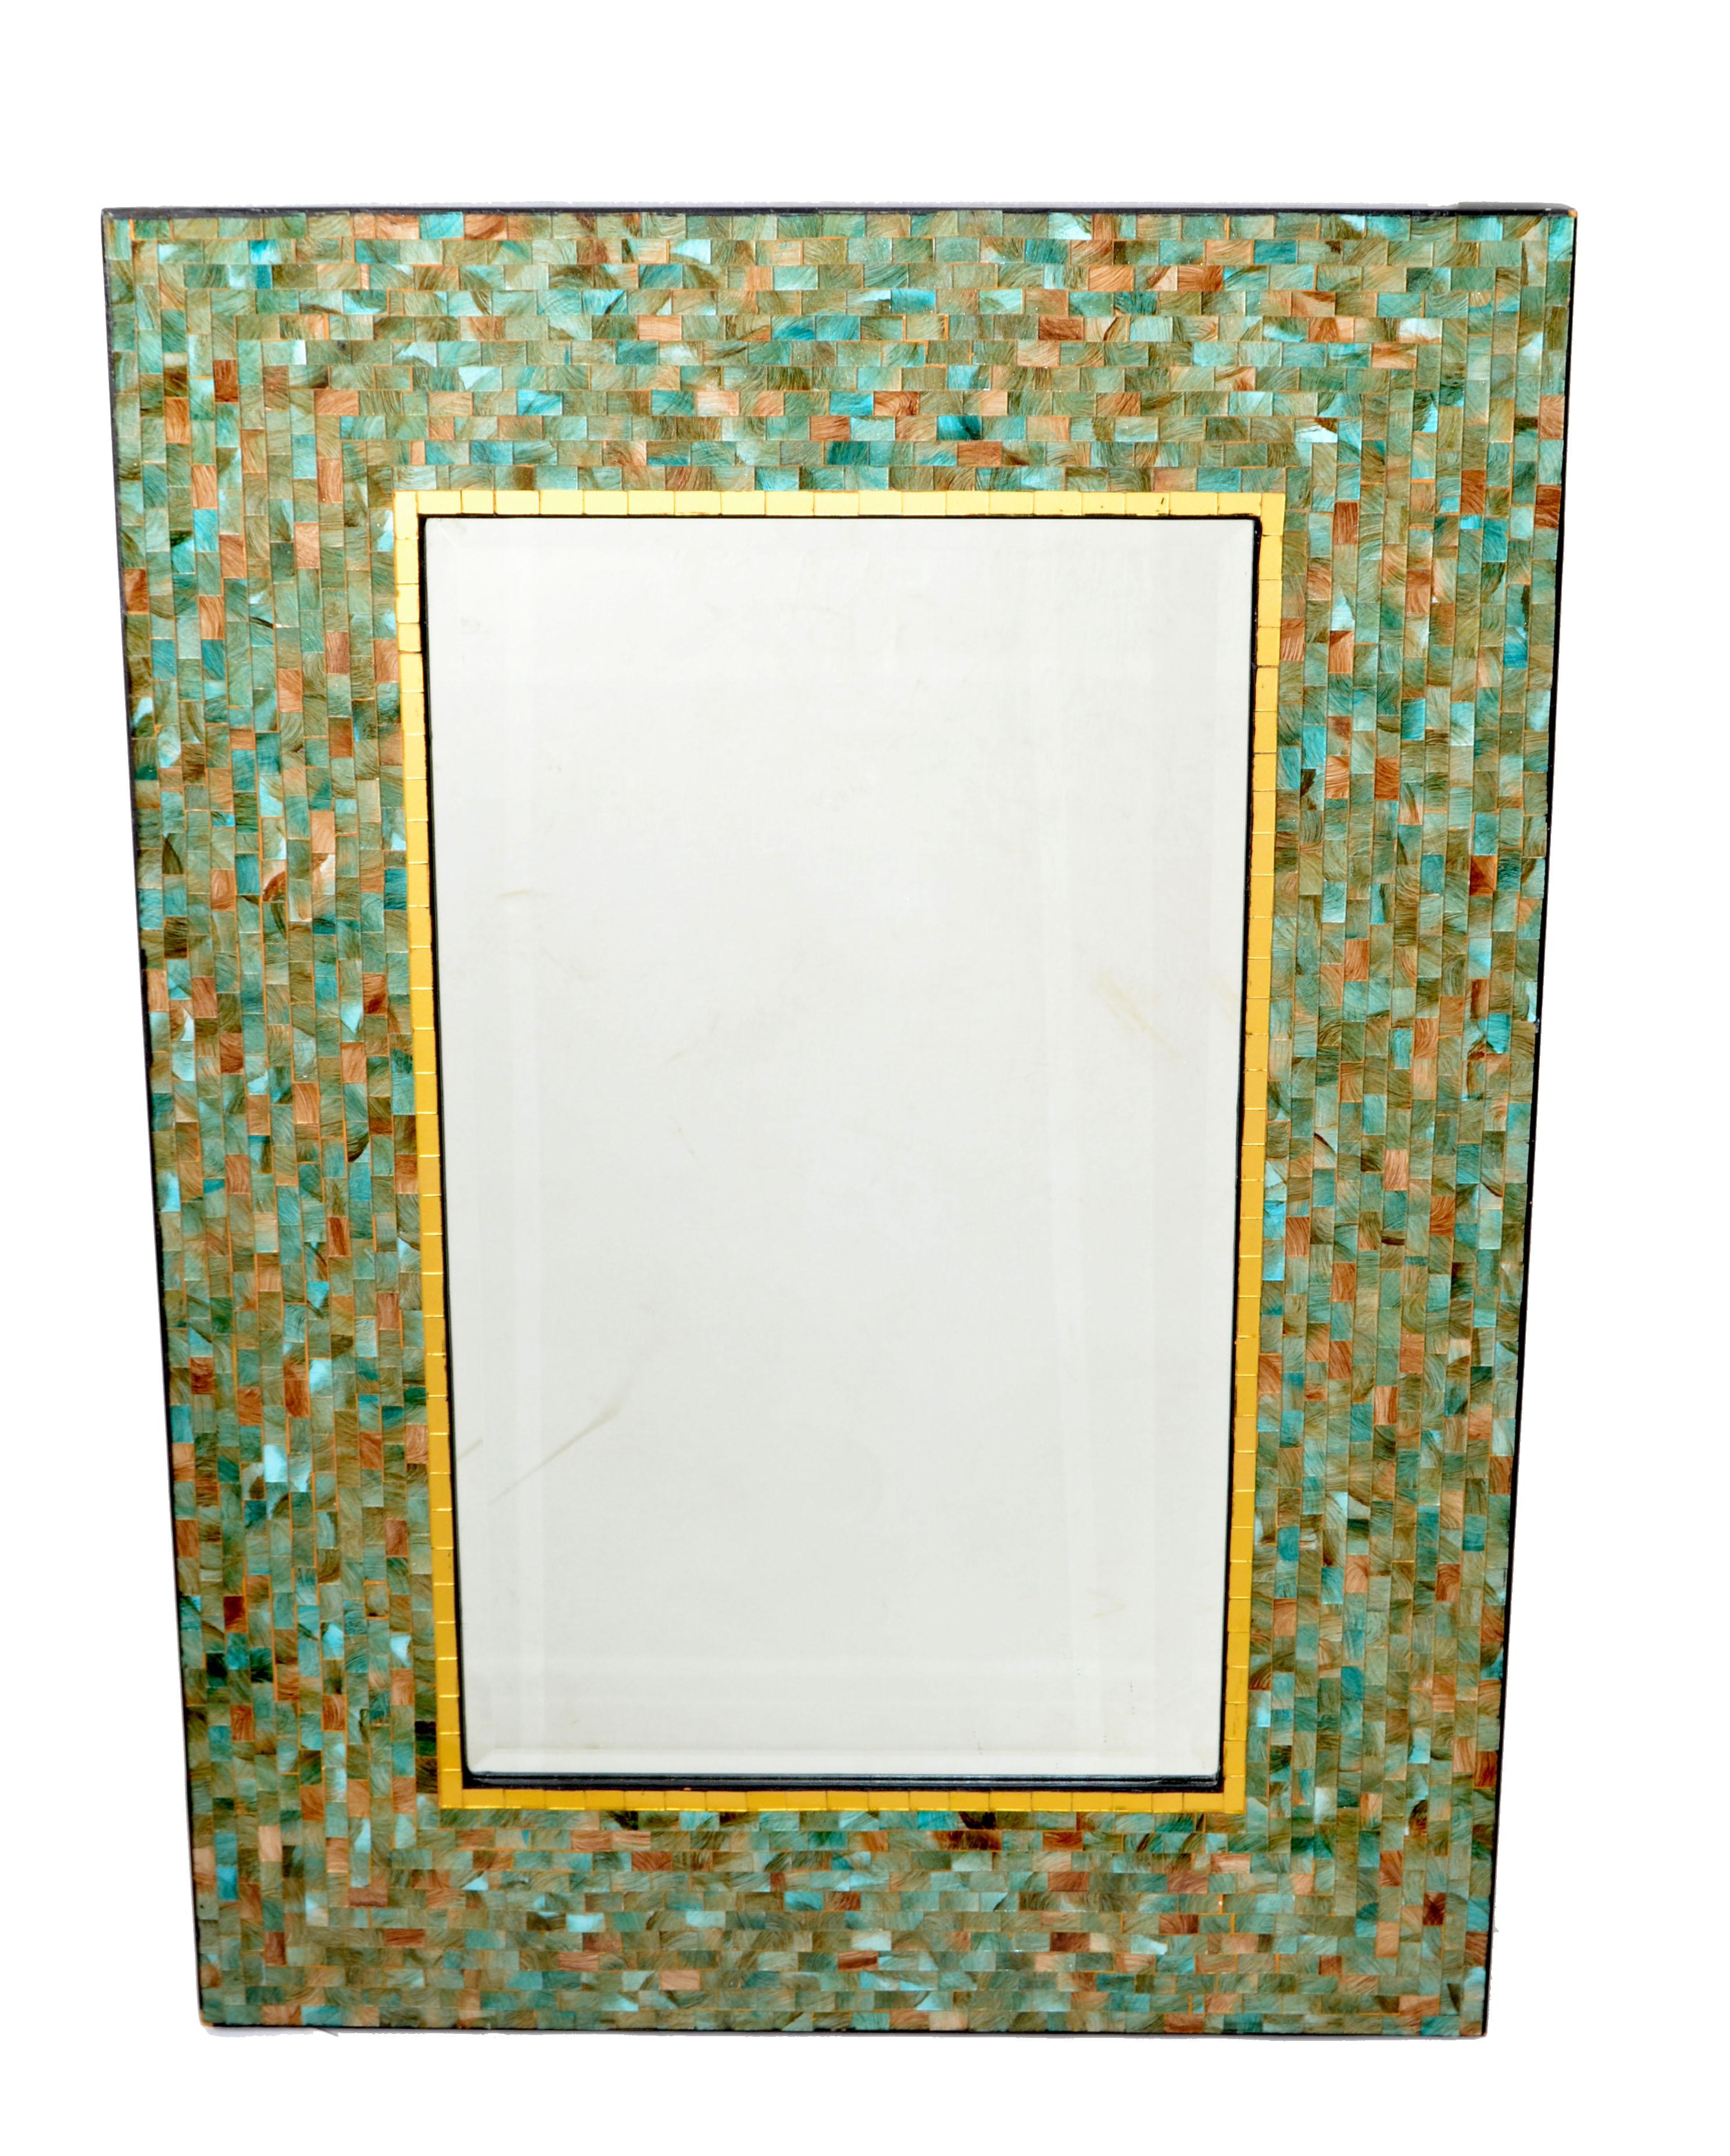 Amerikanischer rechteckiger Mosaik-Wandspiegel aus der Jahrhundertmitte in verschiedenen Grün-, Bronze- und Goldtönen.
Die Rückwand ist aus Massivholz gefertigt und sorgt für eine sichere Aufhängung.
Das Spiegelglas ist abgeschrägt. 
Die Größe